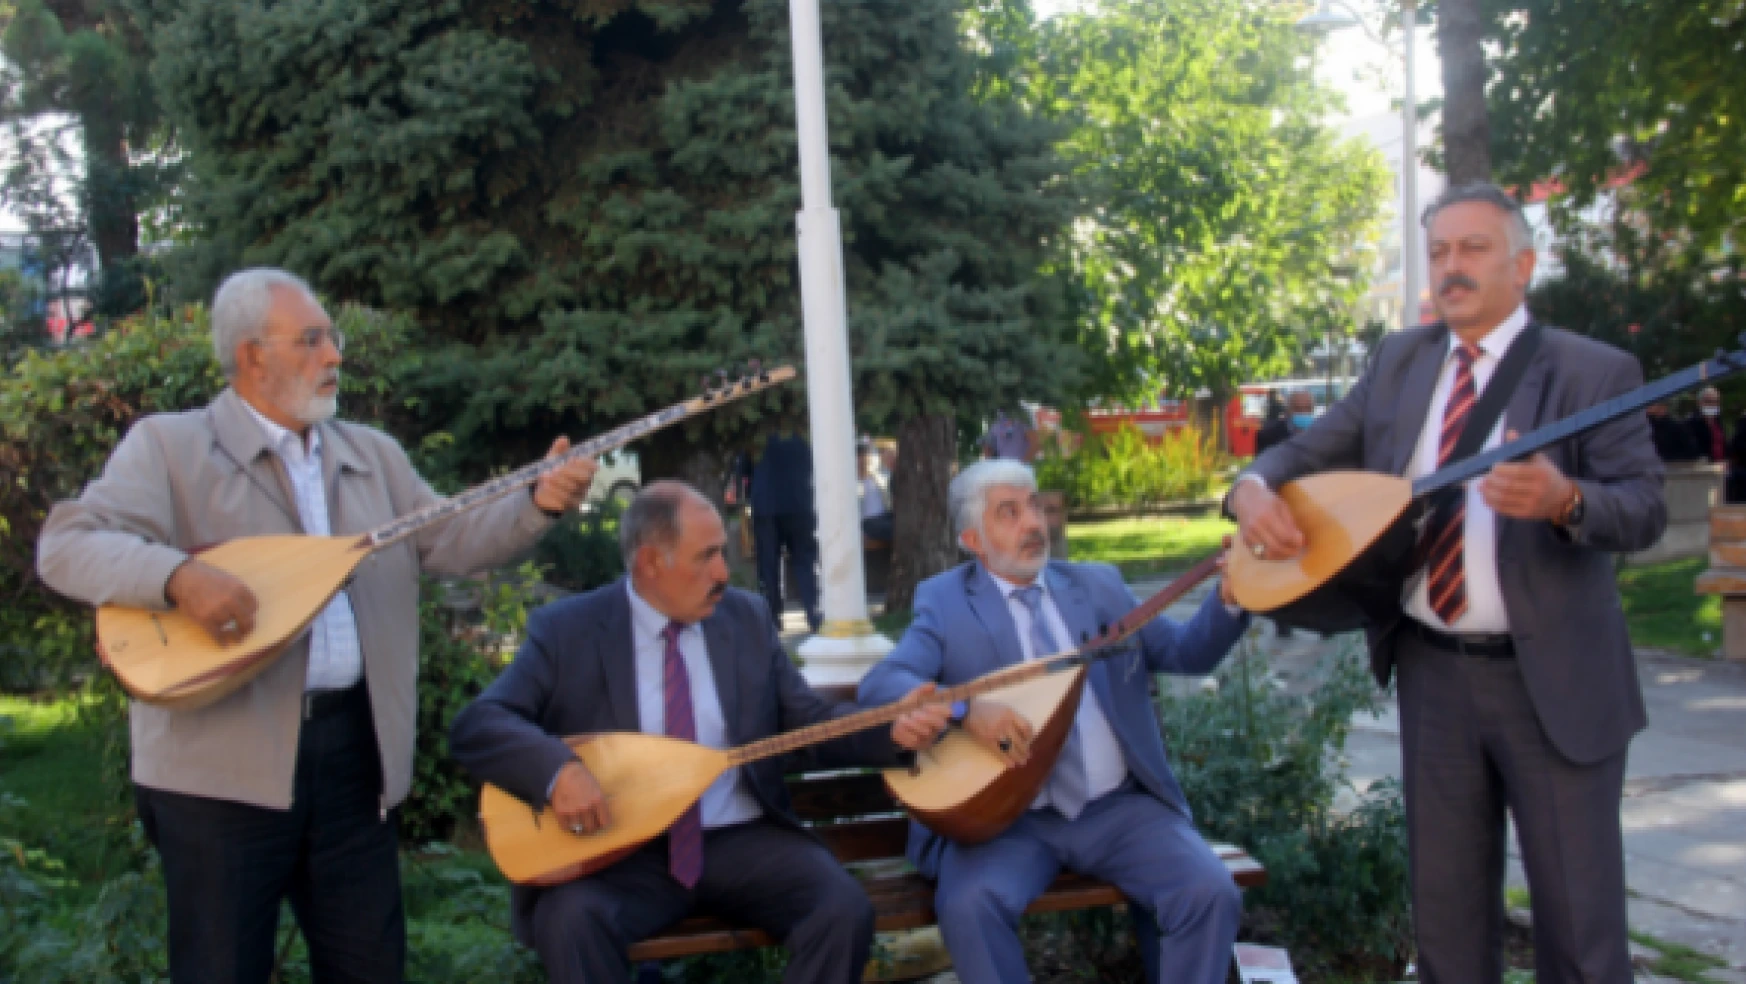 5 bin yıllık geleneği yaşatmak için Erzincan'da buluştular